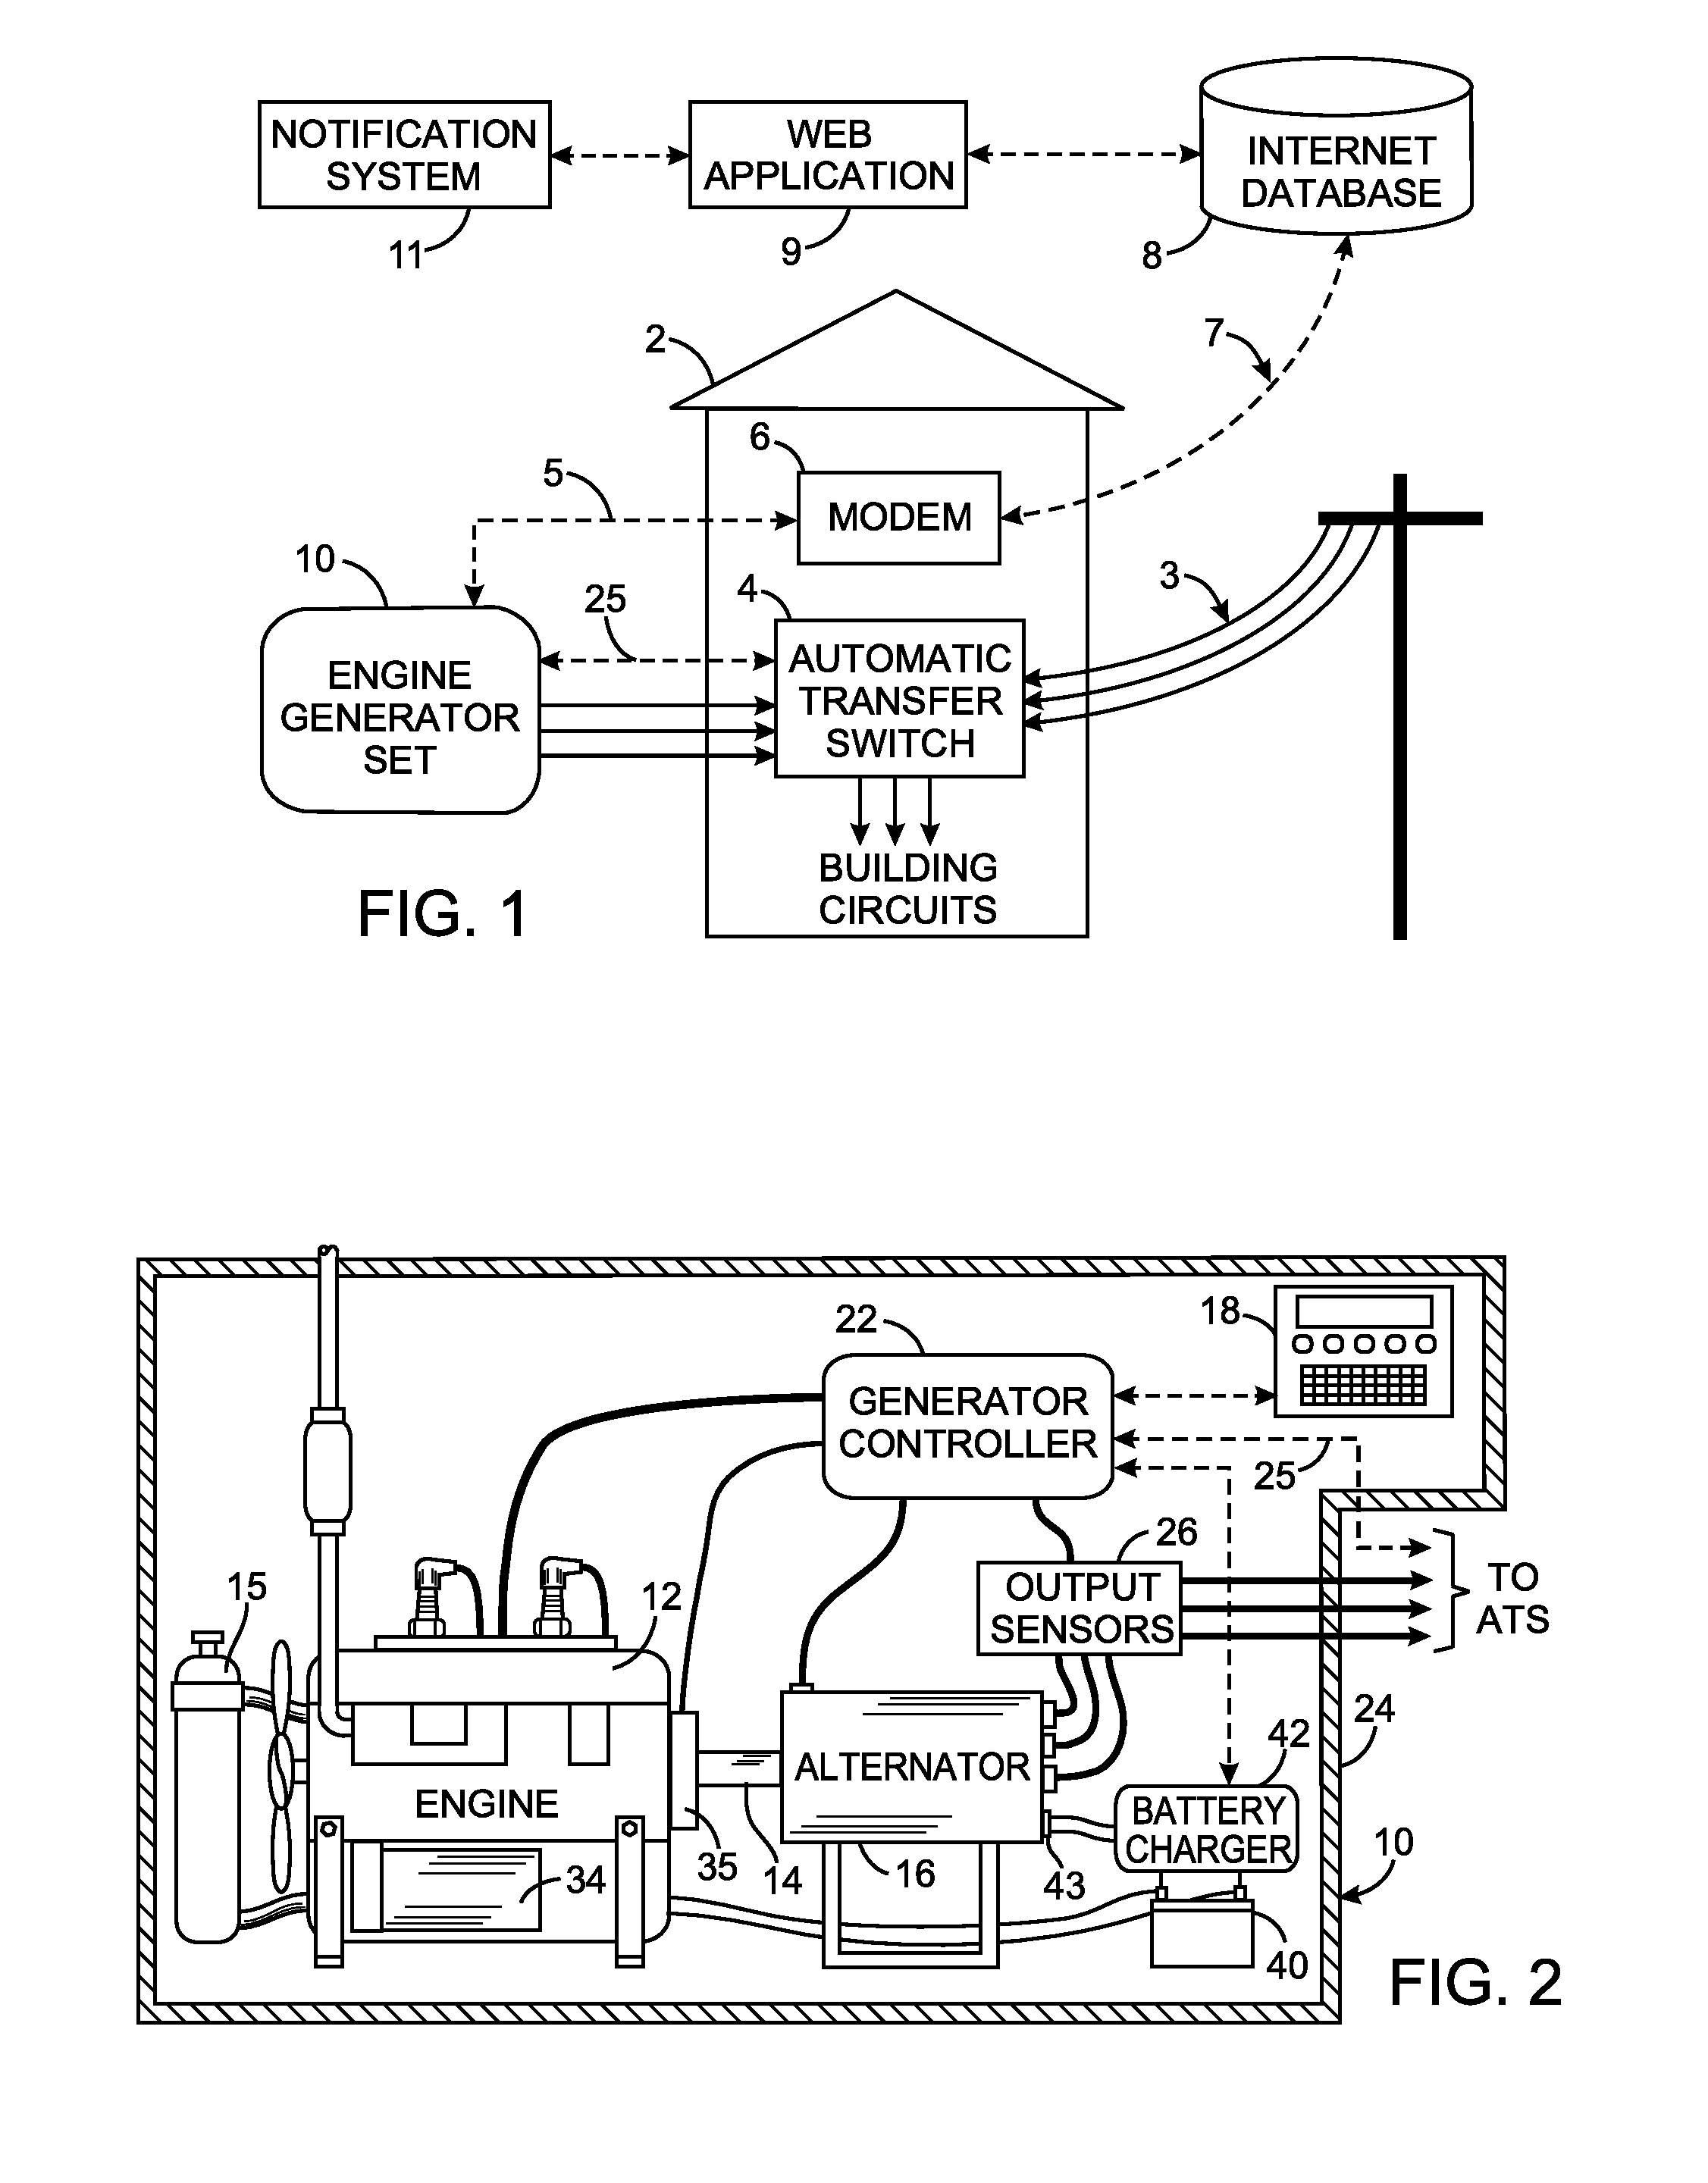 Diagnostic method for an engine-generator set